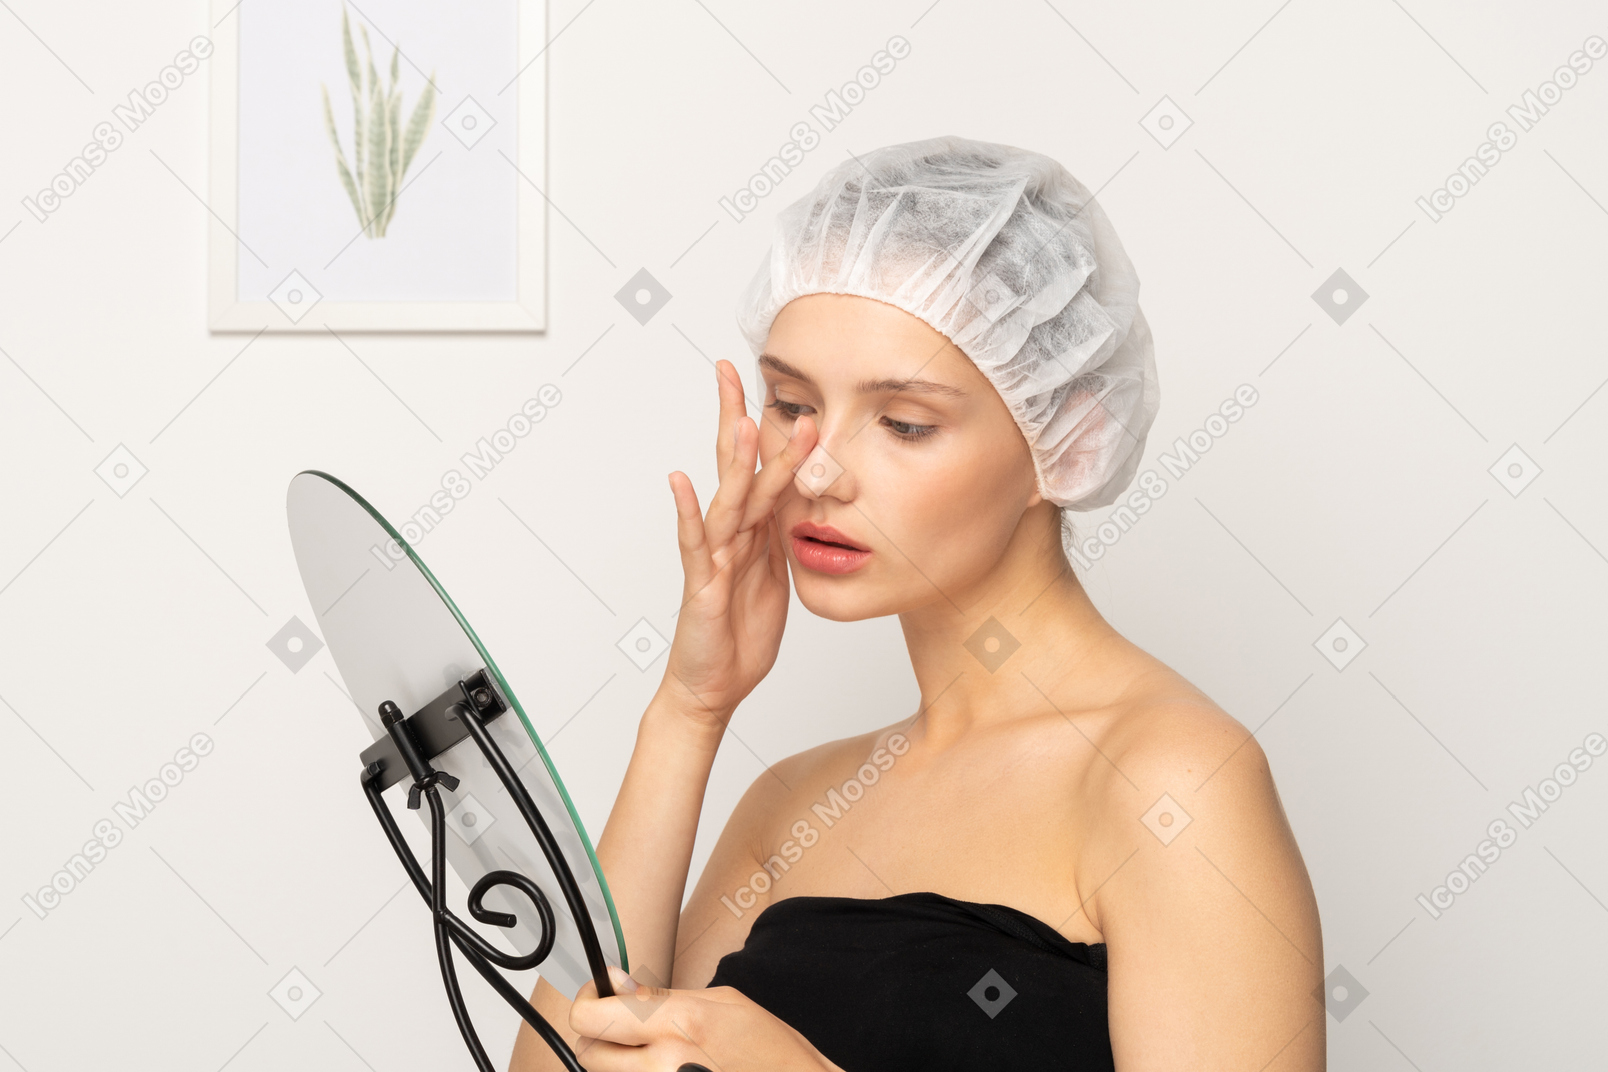 Jovem paciente do sexo feminino em boné médico tocando seu nariz enquanto olha no espelho